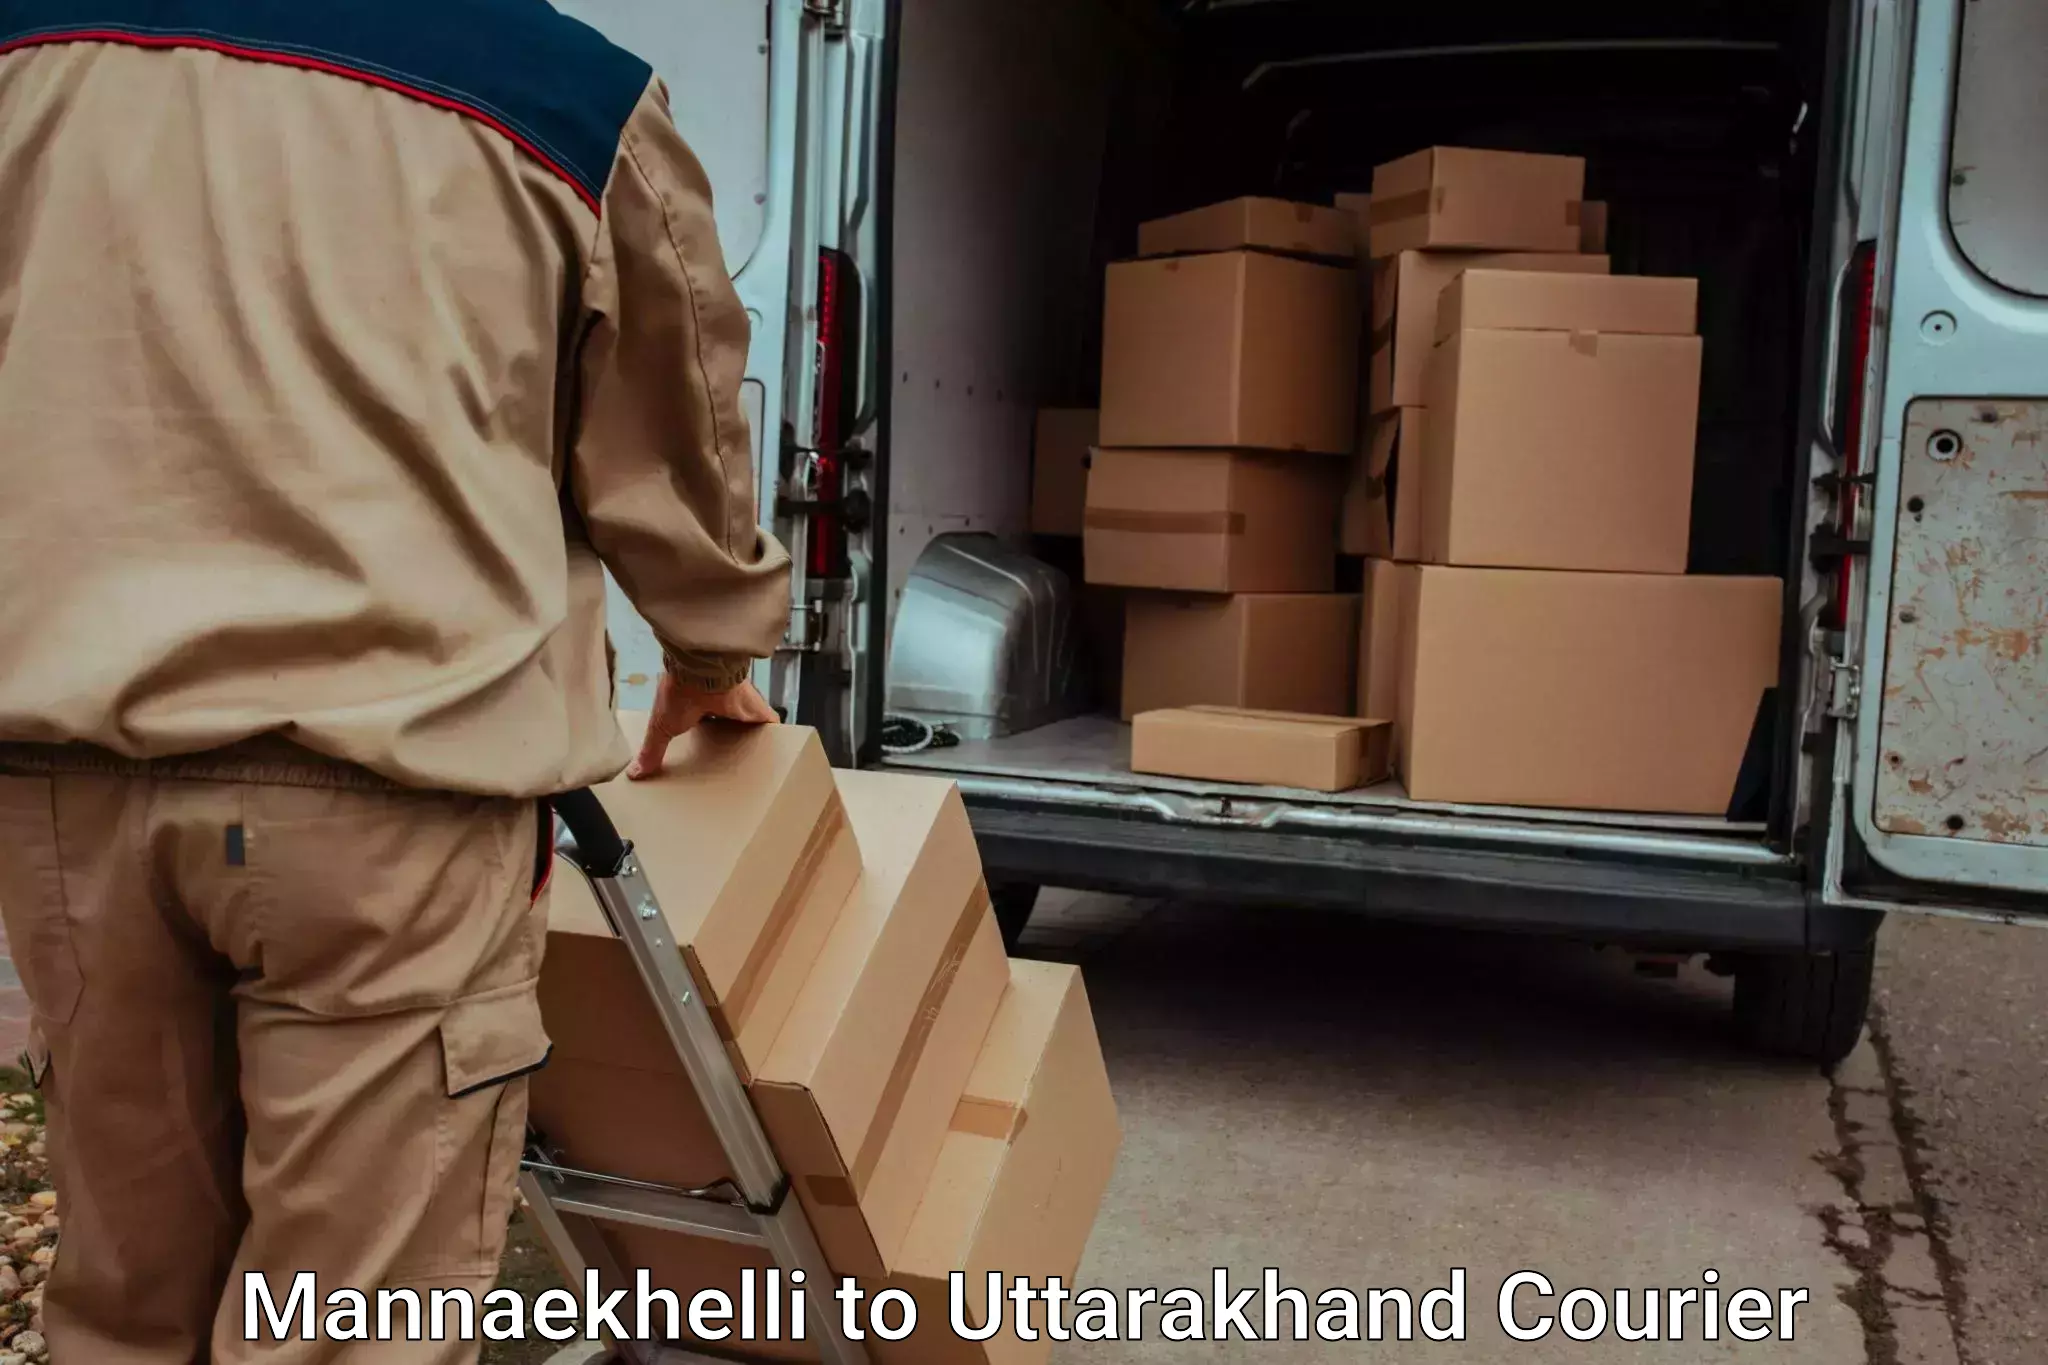 Luggage transport company Mannaekhelli to Uttarakhand